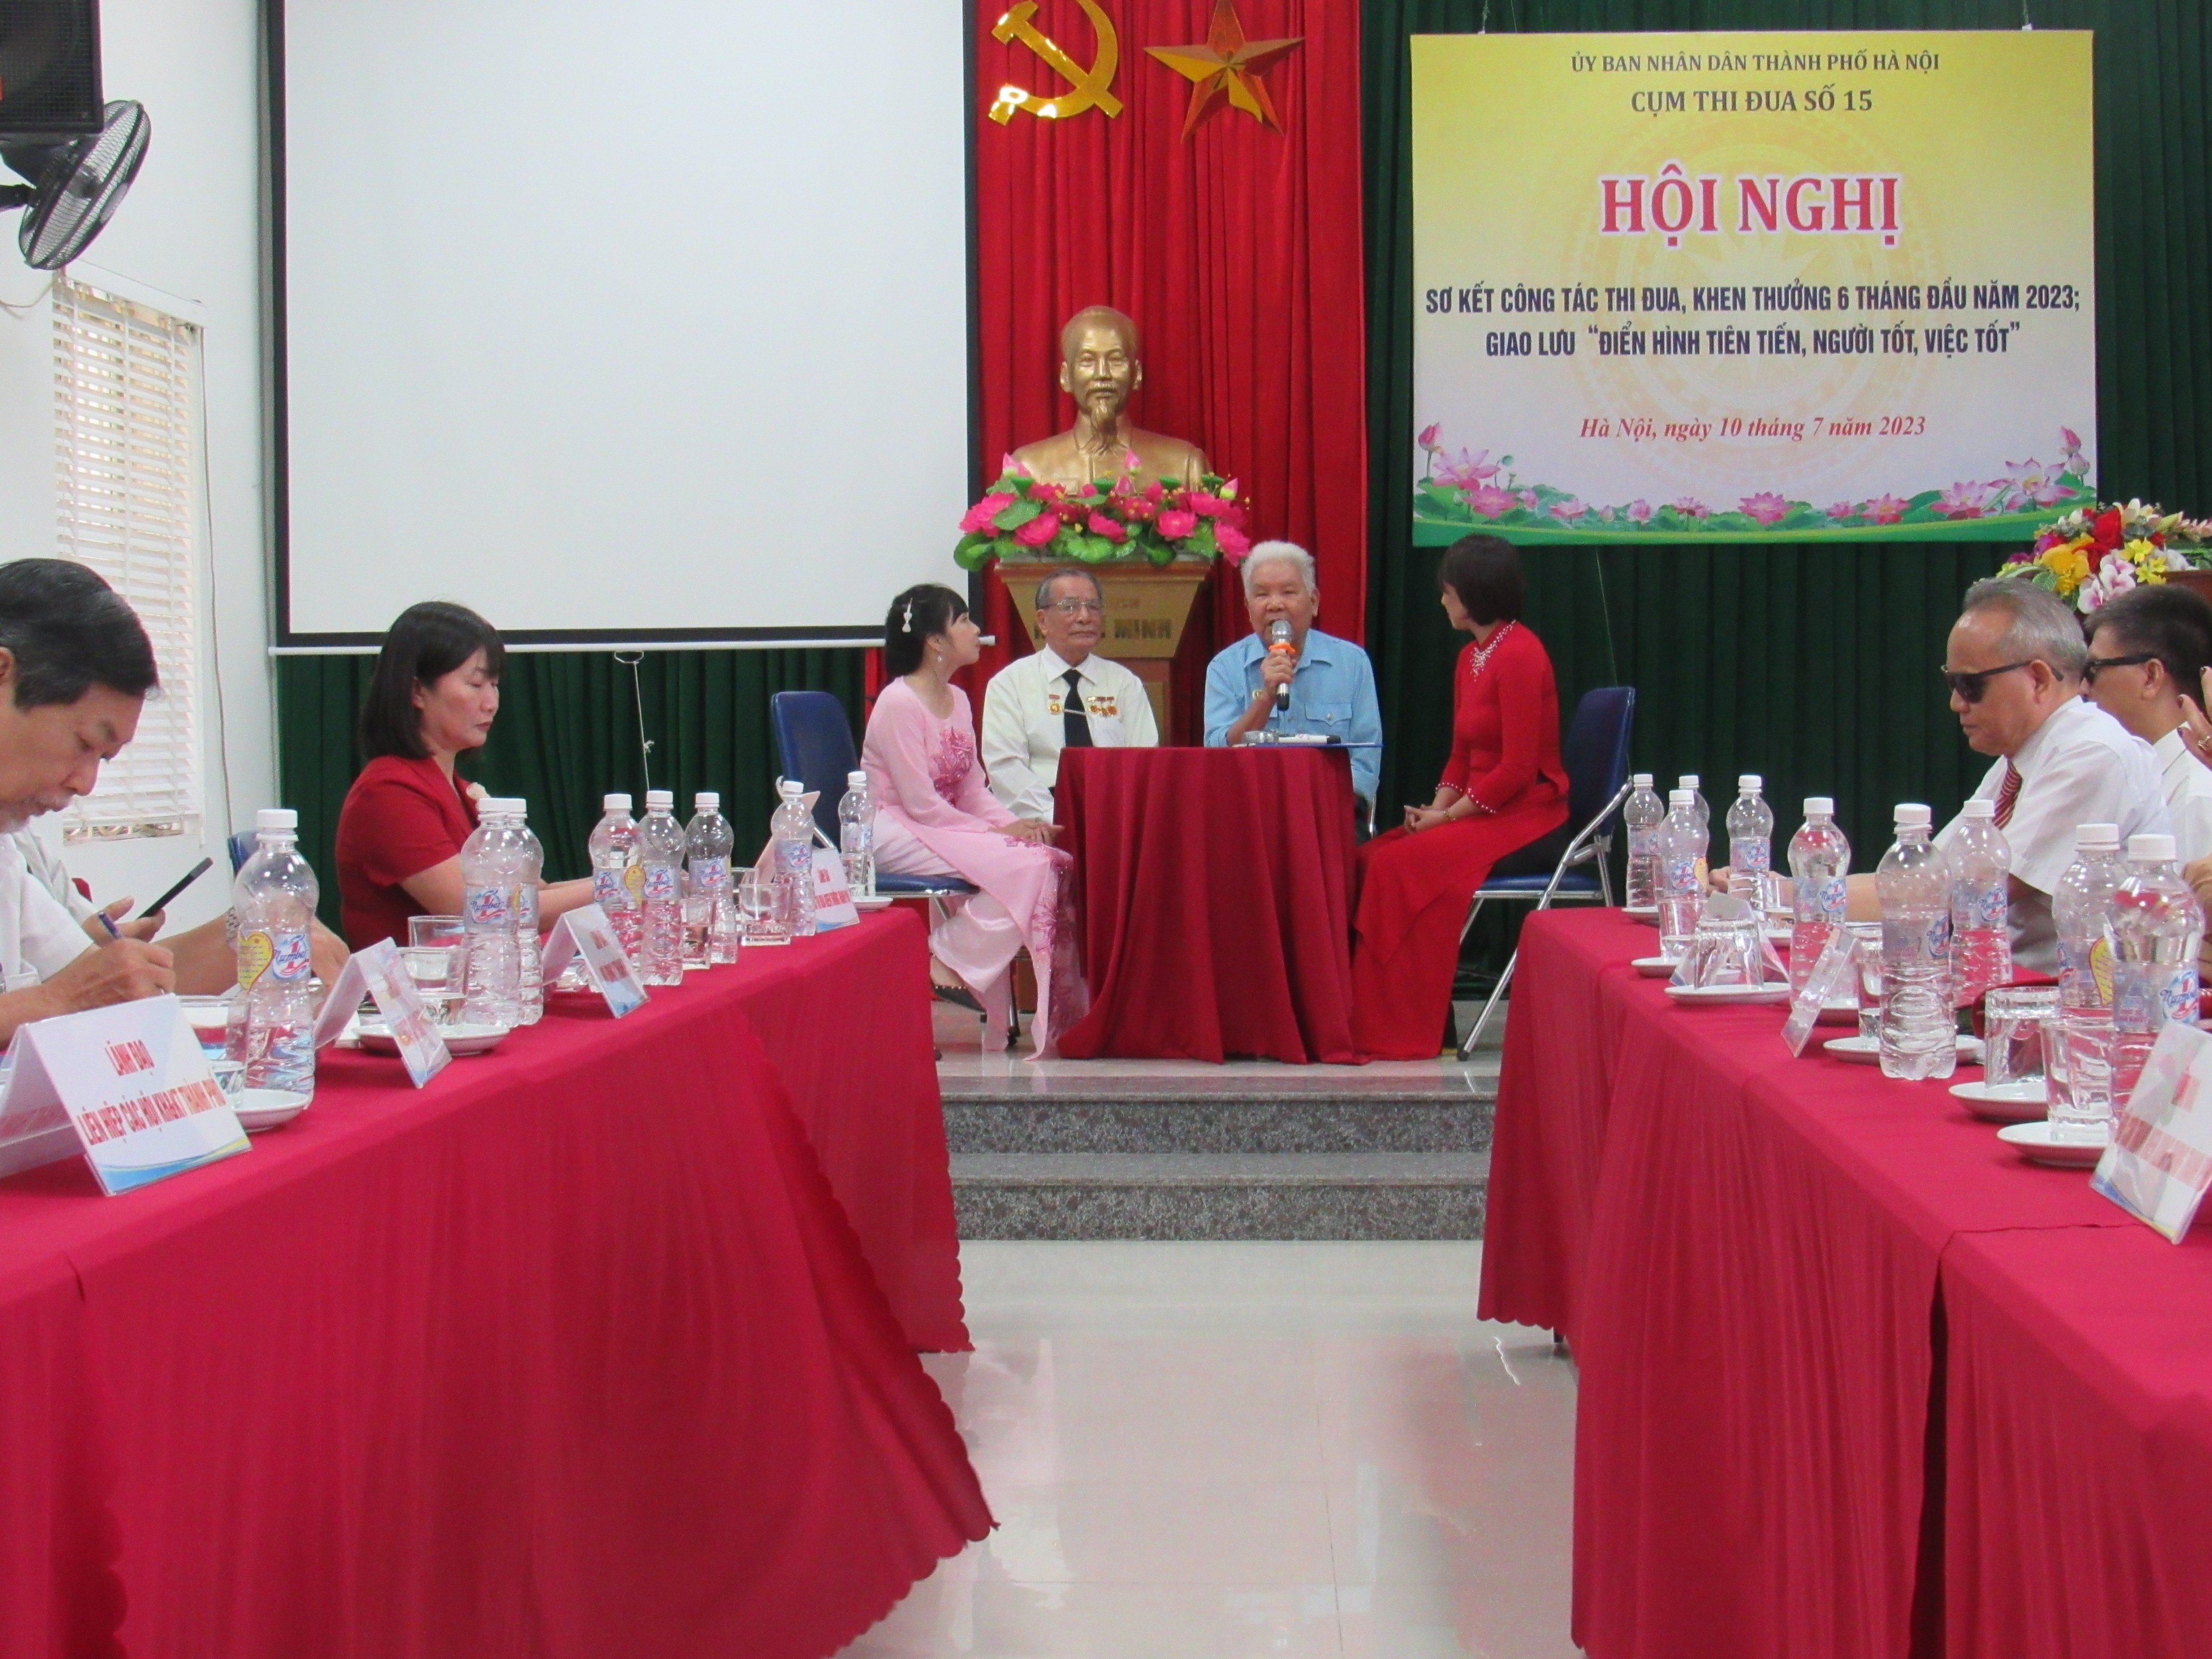 Hội Người mù thành phố Hà Nội đăng cai tổ chức hội nghị thi đua khen thưởng cụm thi đua số XV